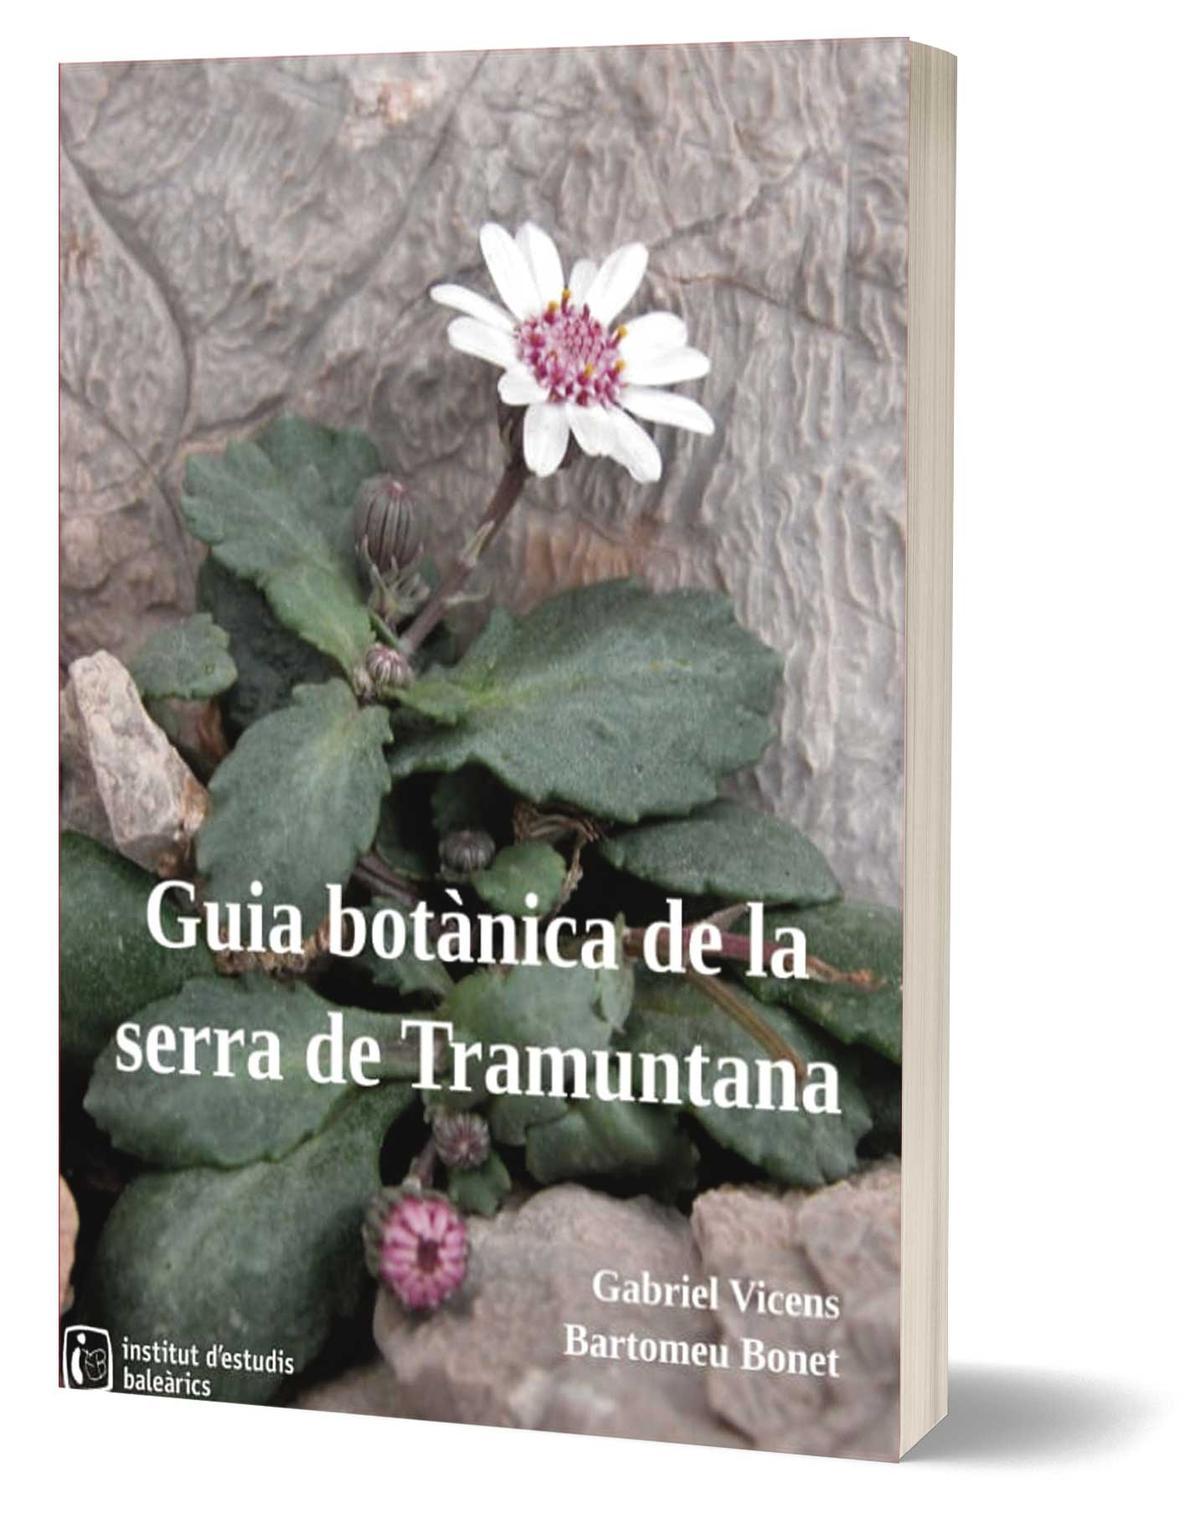 Portada del llibre 'Guia botànica de la serra de Tramuntana' (Gorg Blau Aventura), de Gabriel Vicens i Bartomeu Bonet.